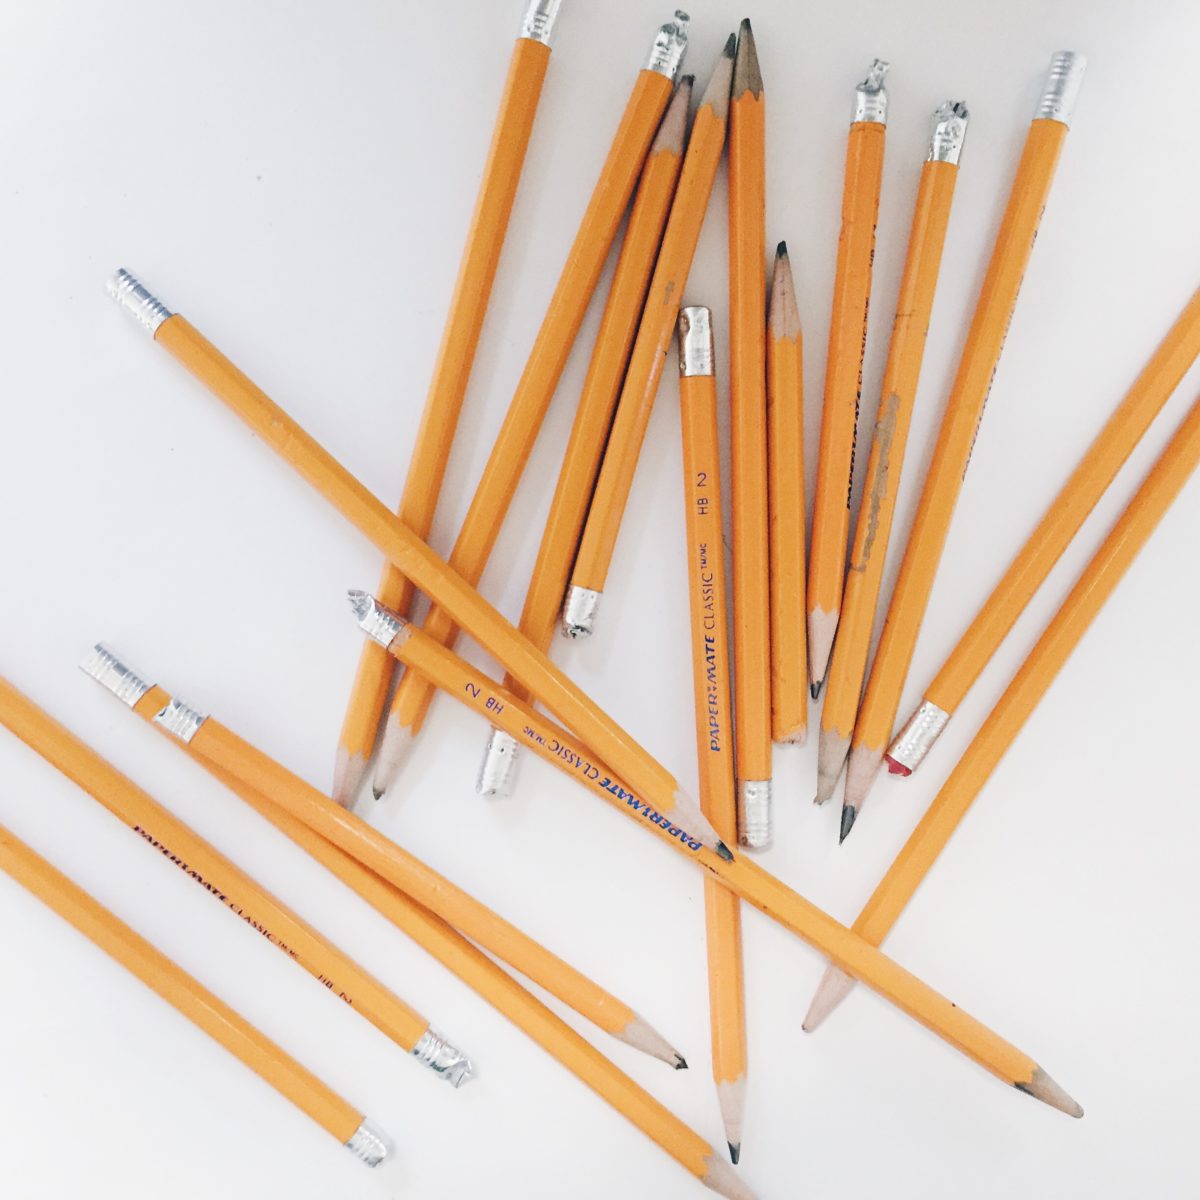 TTT: The Pencil Challenge